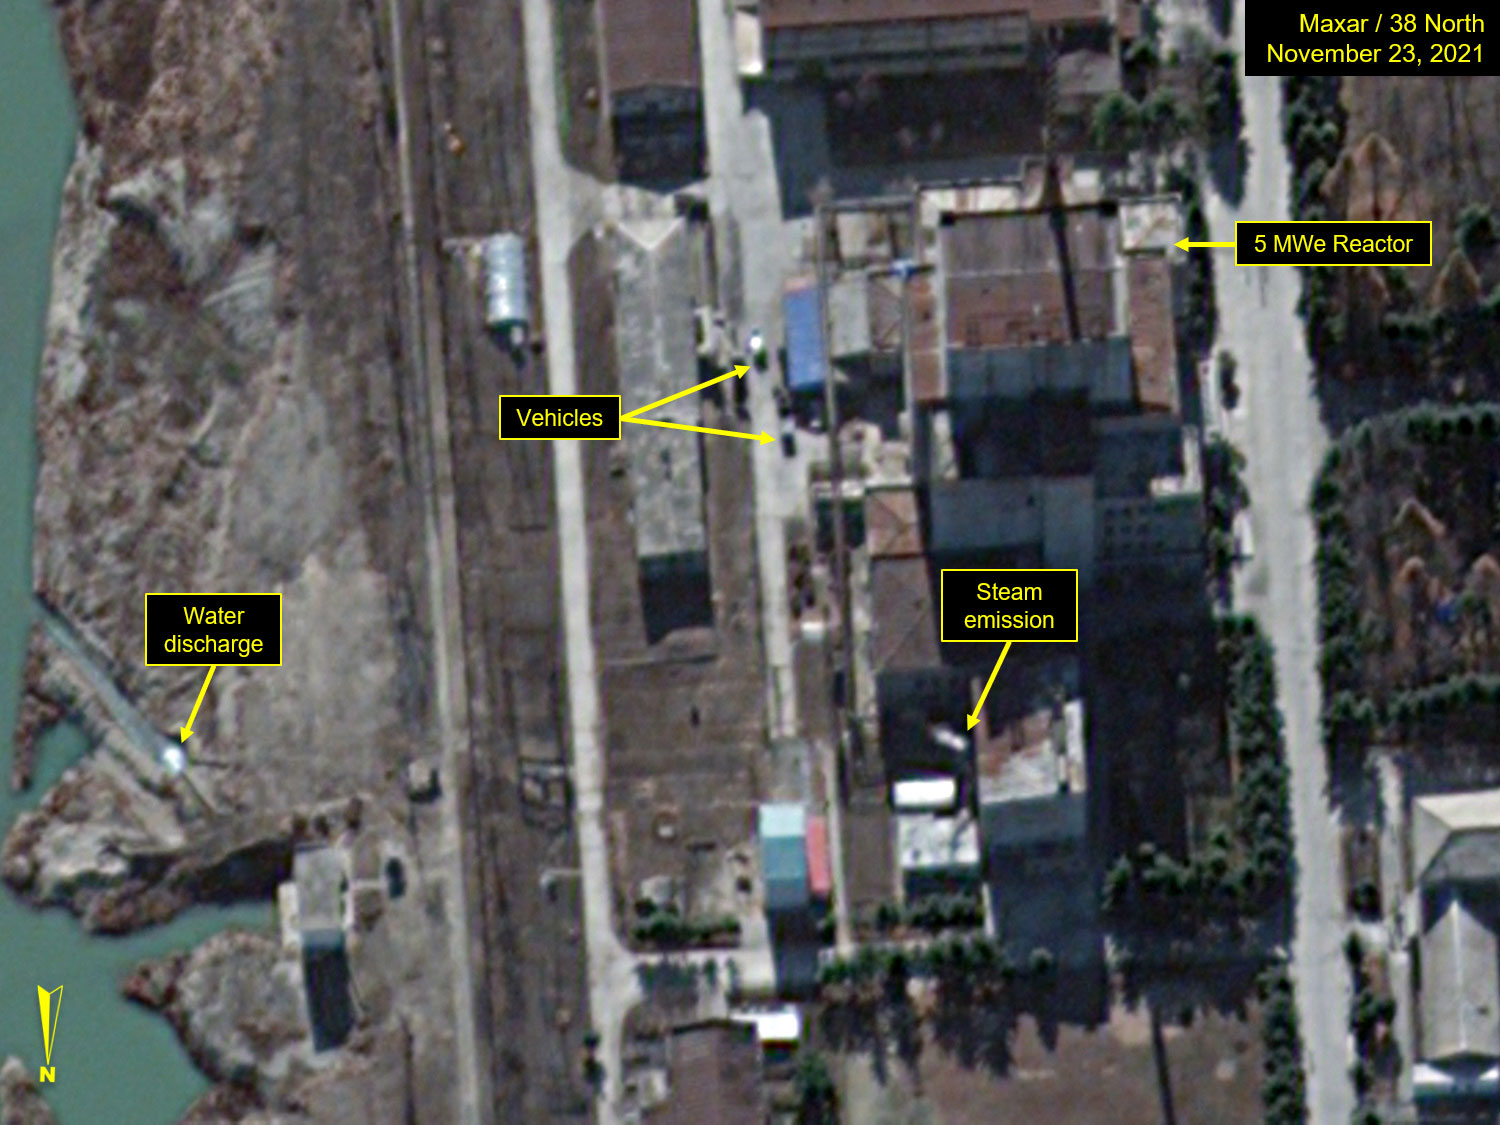 북한 영변 핵시설: 5MW 원자로 가동의 추가 증거